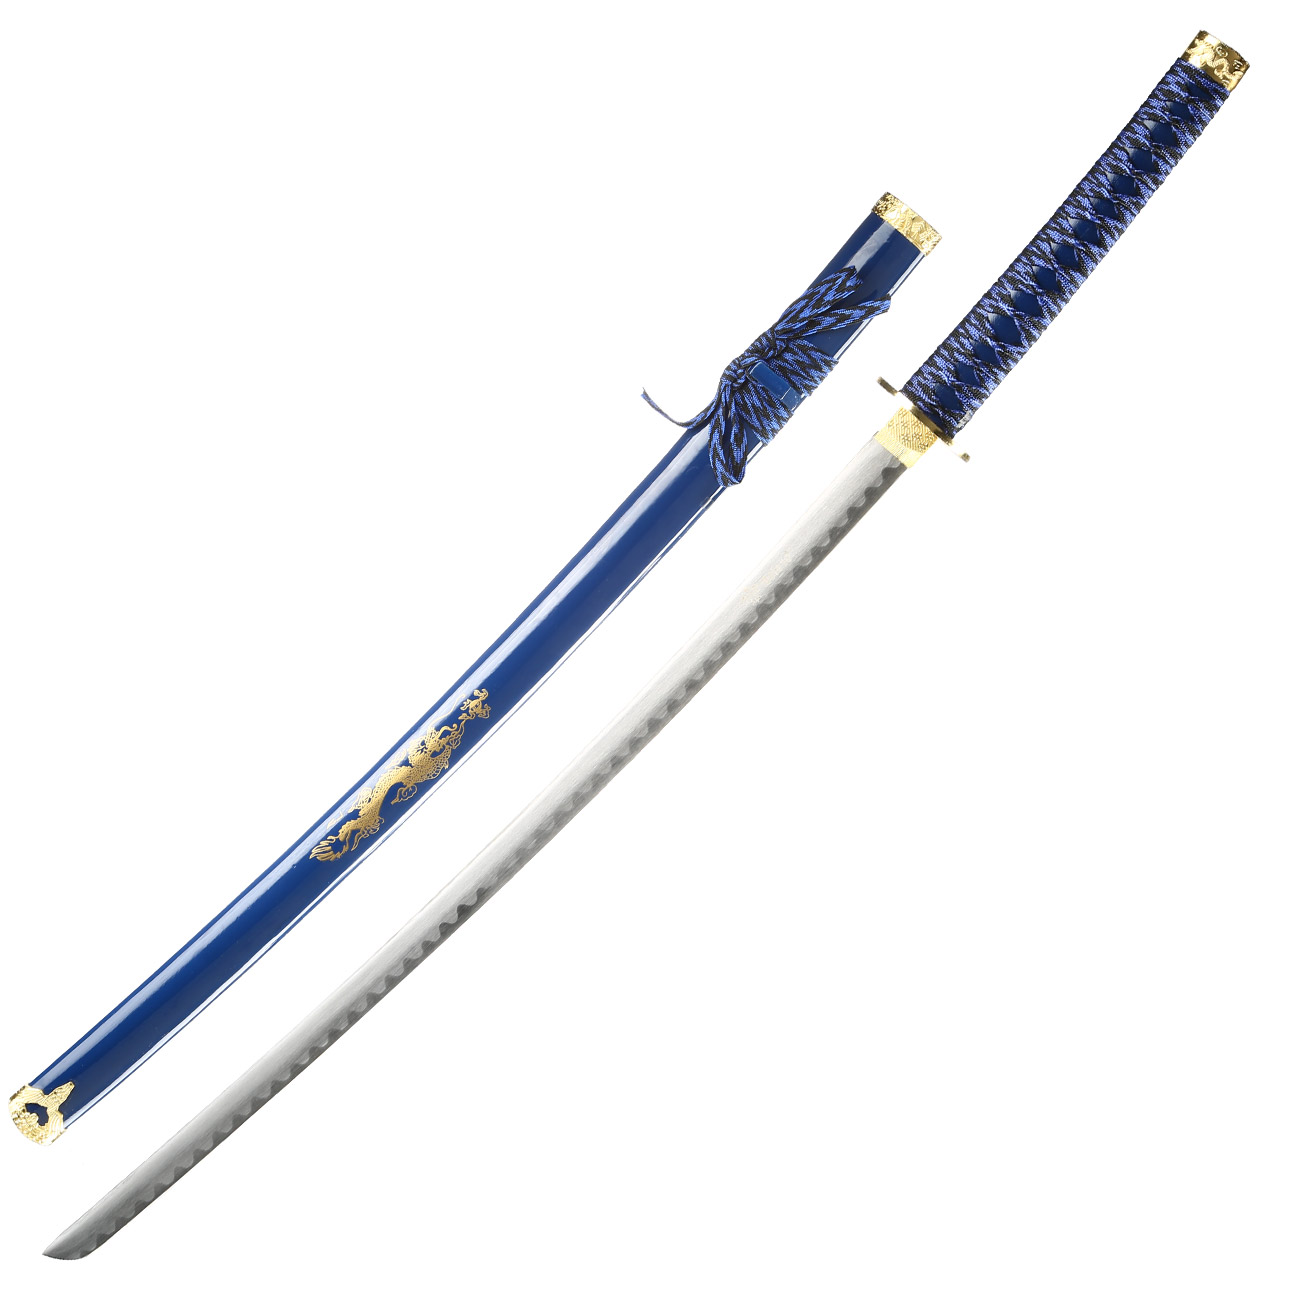 Tole 10 Imperial Schwertset Golden Dragon 3-teilig inkl. Ständer blau Bild 1